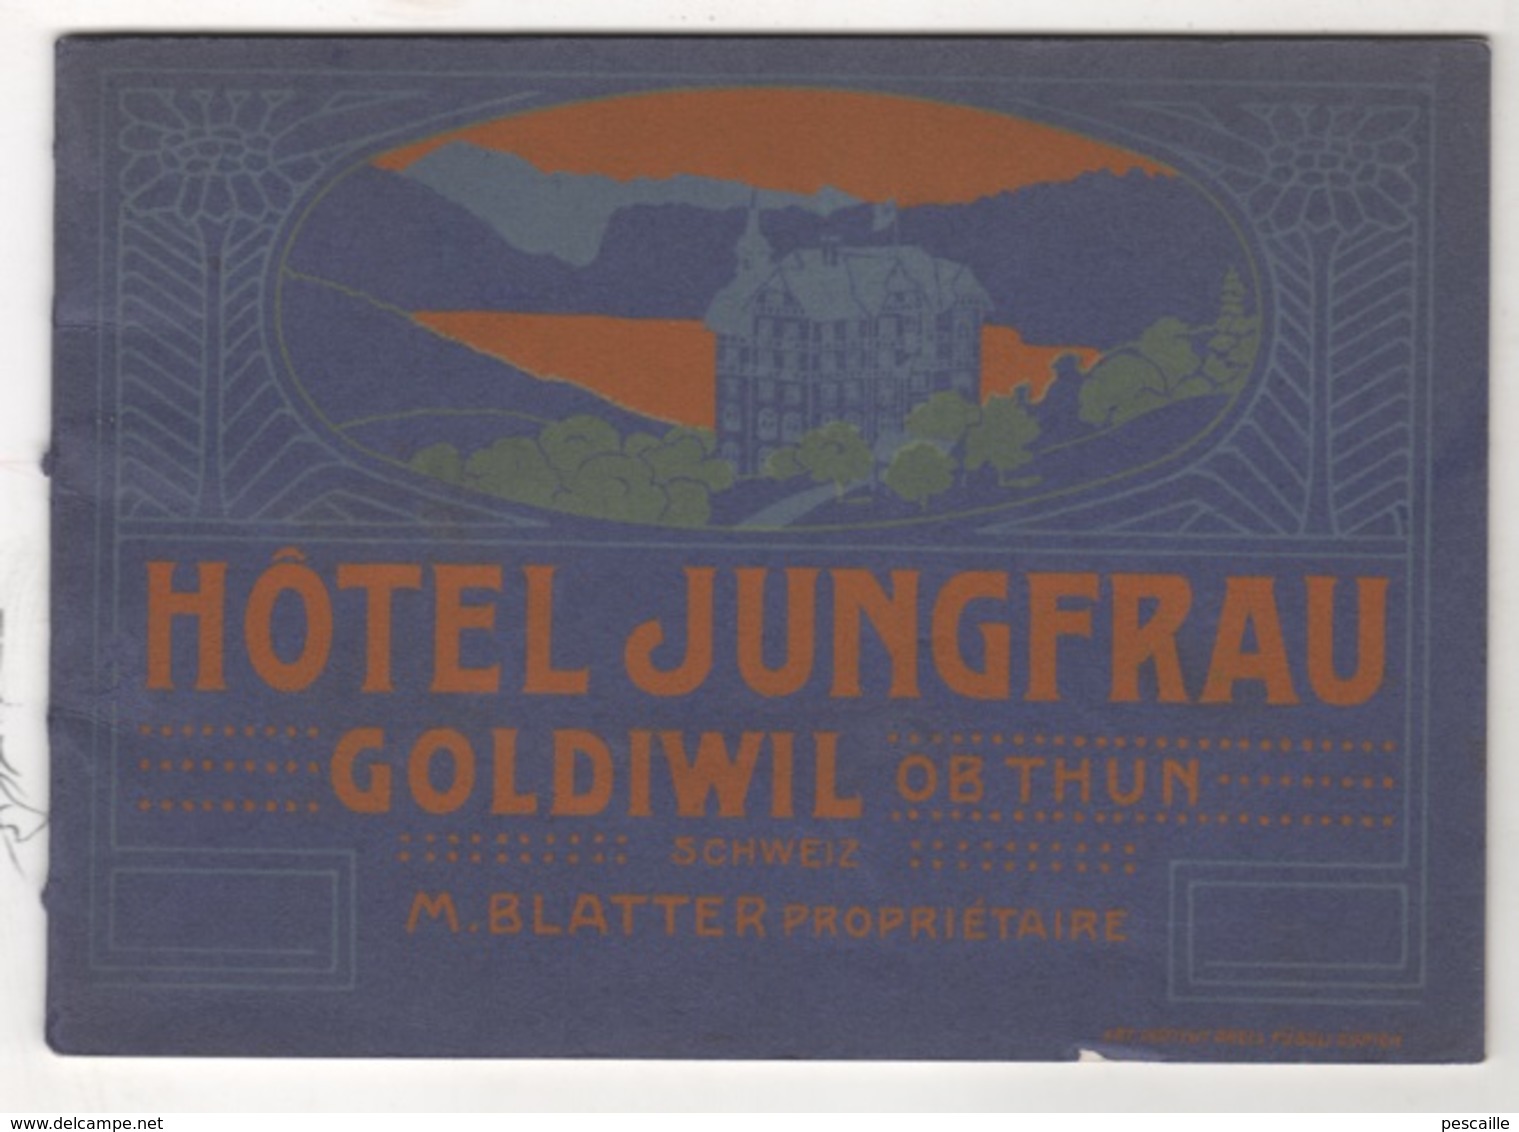 BEAU LIVRET HOTEL JUNGFRAU - GOLDIWIL OB THUN - SCHWEIZ - M. BLATTER PROPRIETAIRE - 1911 - 23 PAGES AVEC PHOTOS - Pubblicitari